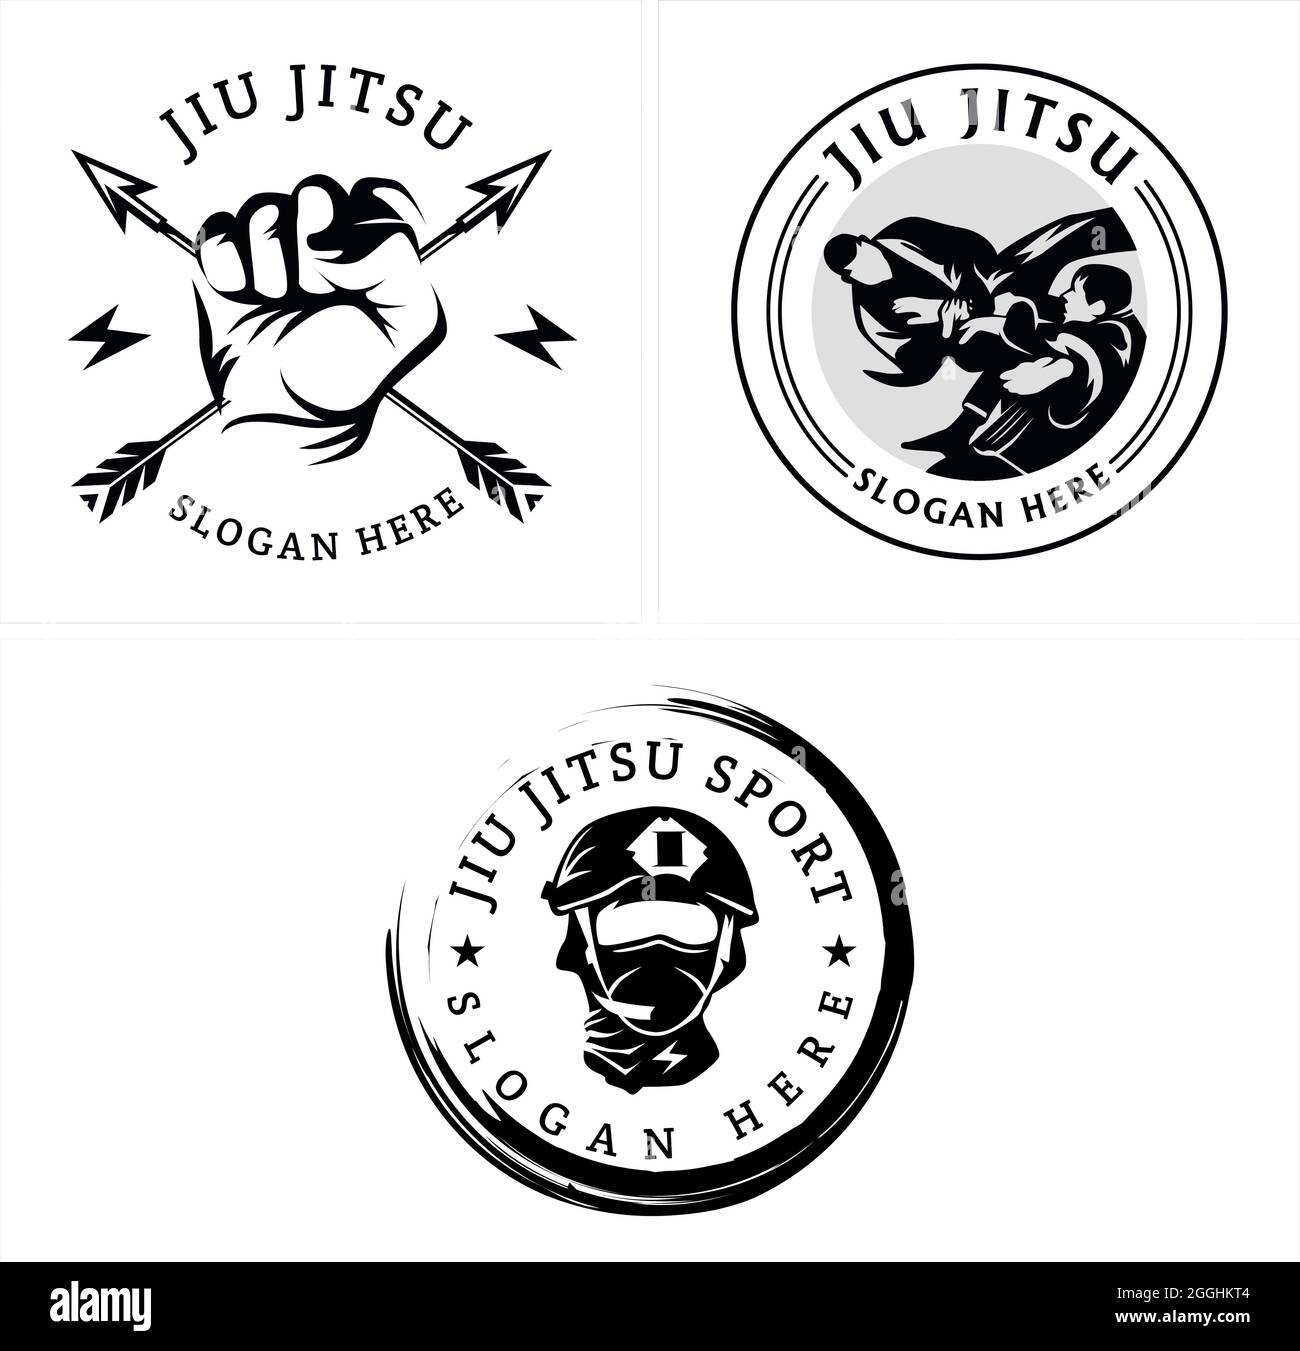 Sport Jiu jitsu club coaching emblem logo design Stock Vector